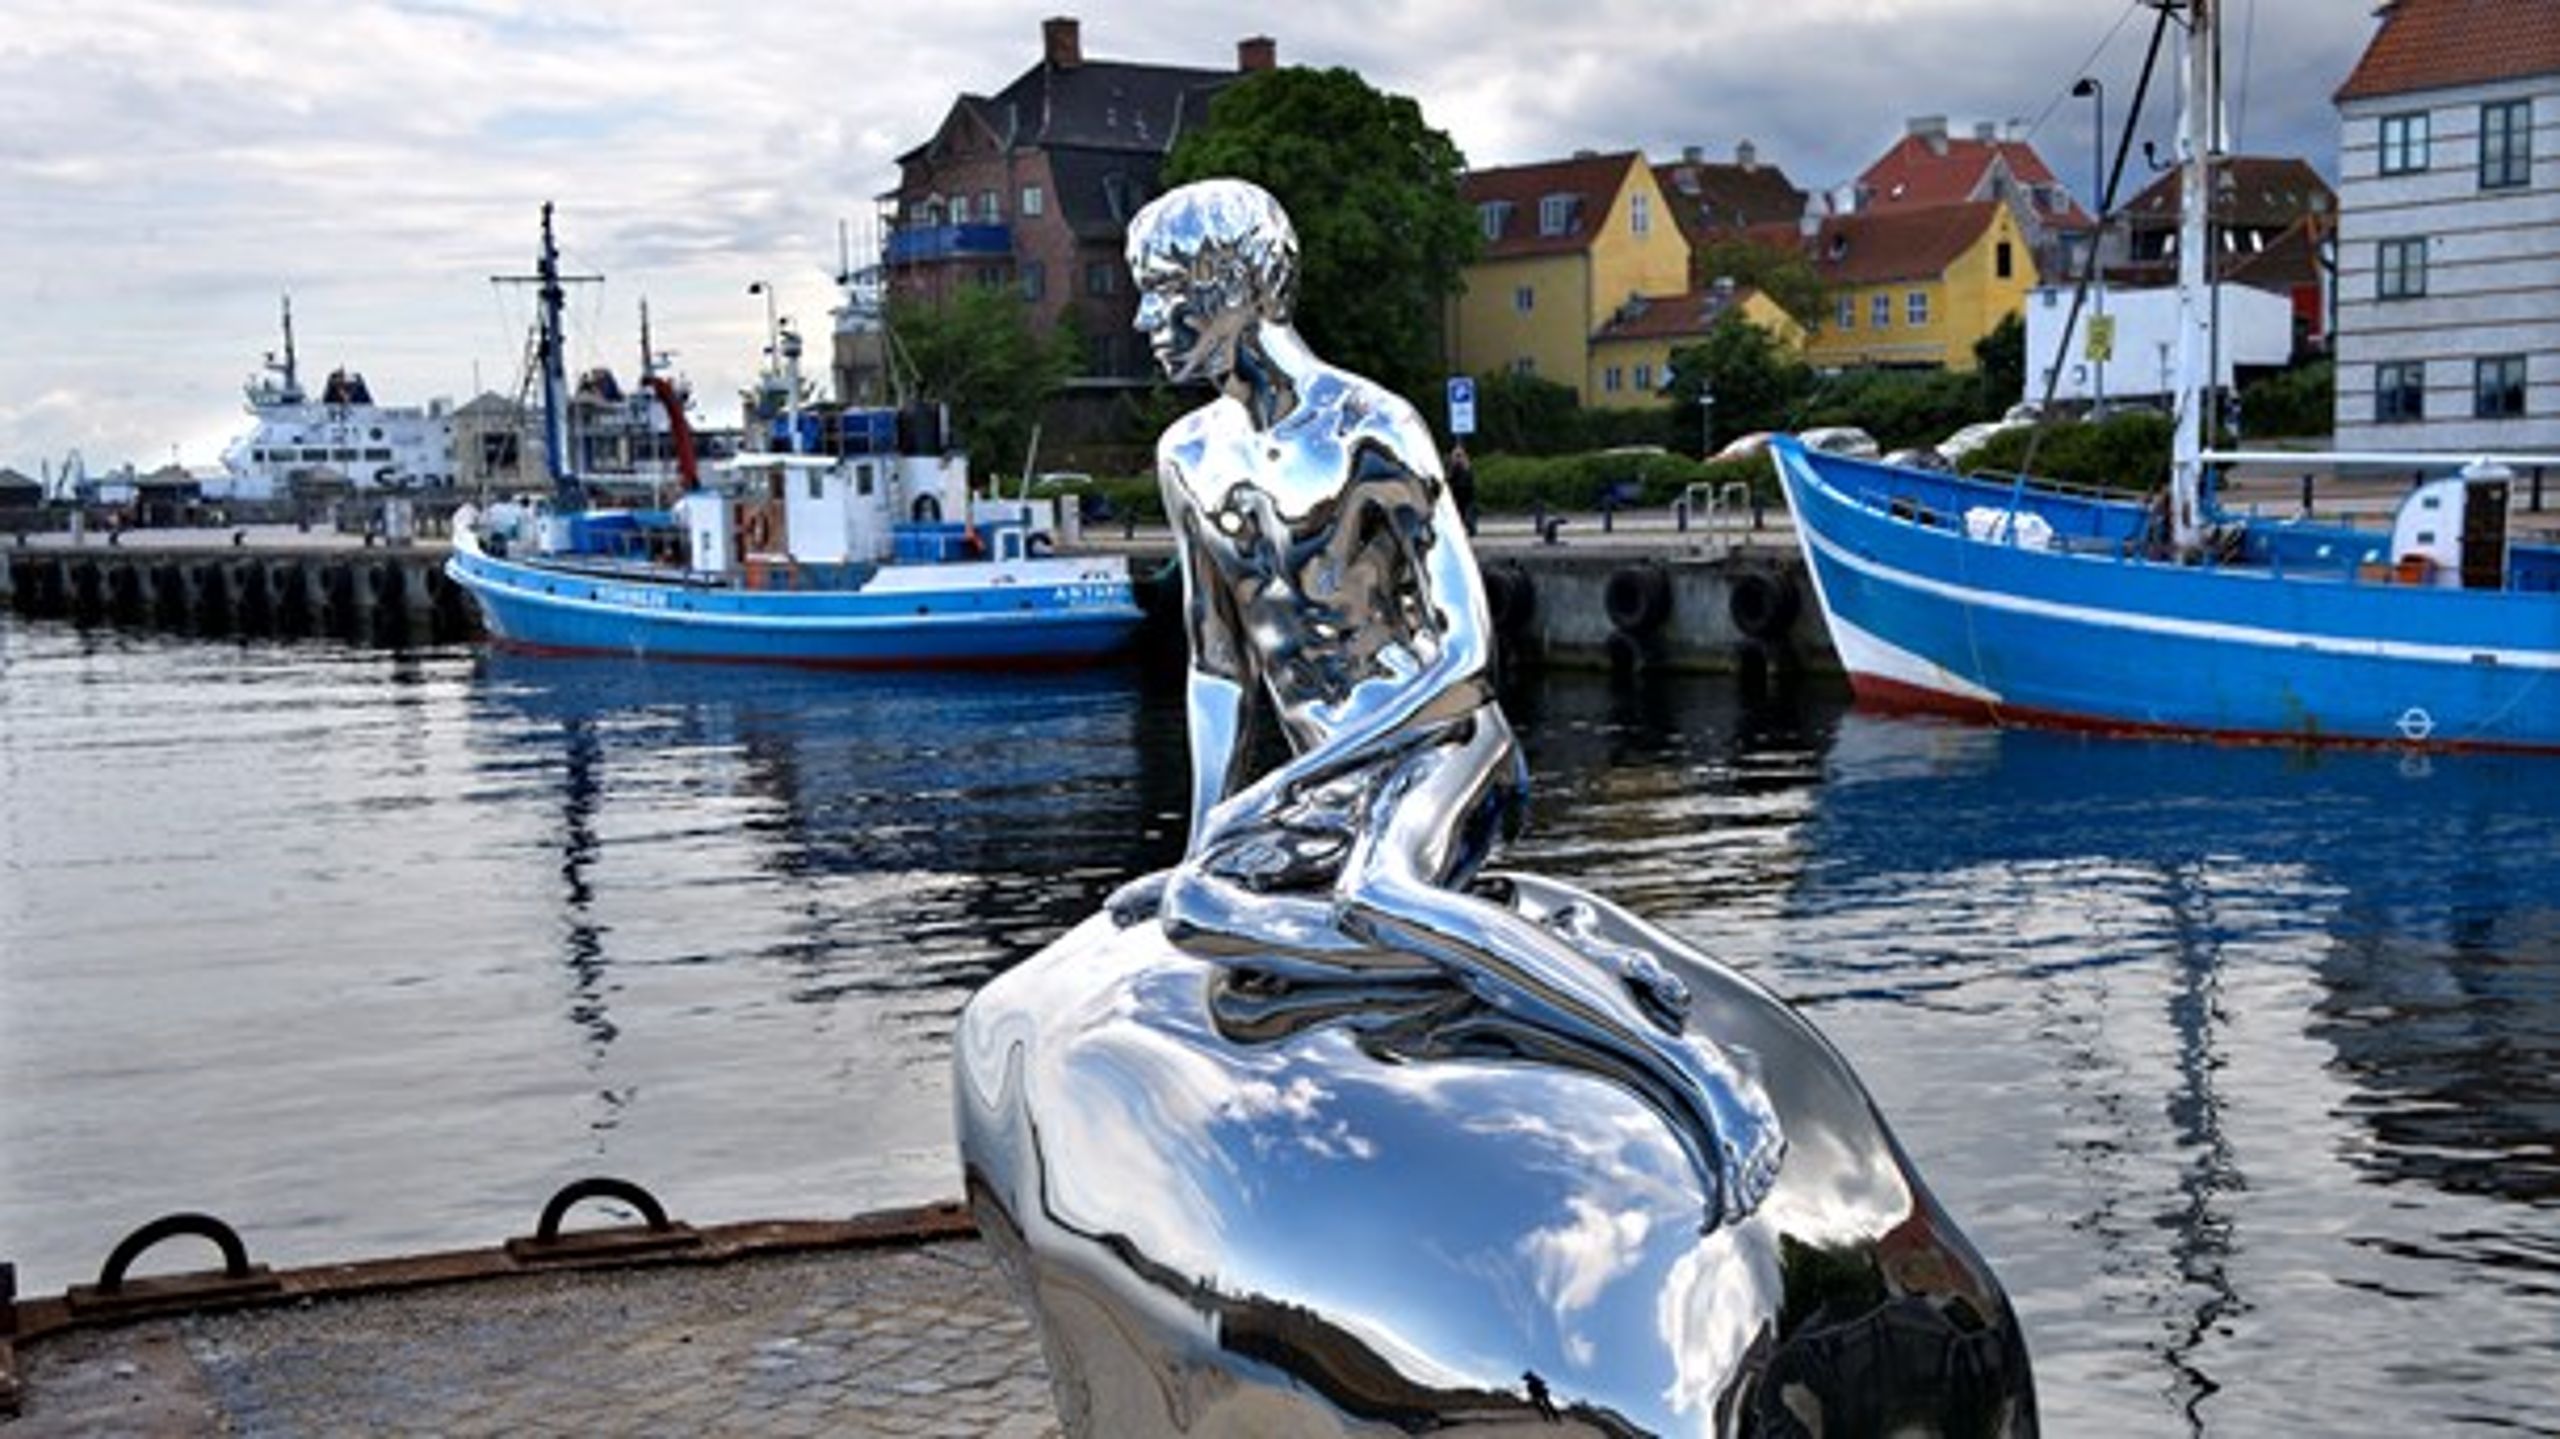 Kunstværker kan blive markører for byen som eksempelvis kunstværket "Han" foran Kulturværftet i Helsingør, skriver Laila Kildesgaard og Lars Goldschmidt.&nbsp;